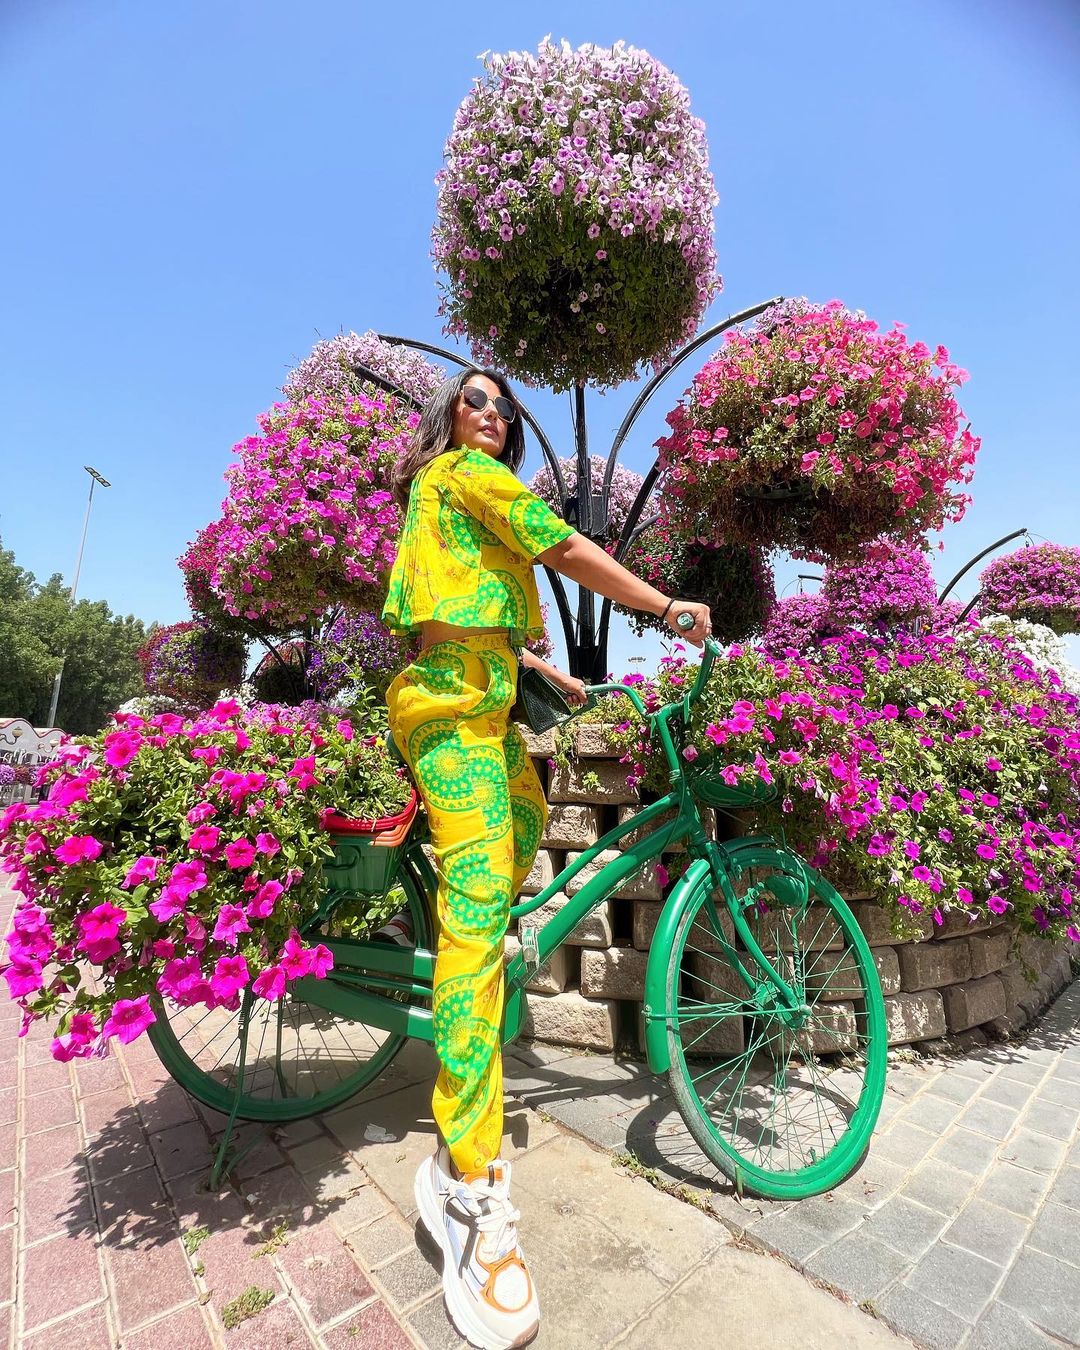  दुबई के खूबसूरत गार्डन में साइकिल पर सवार होकर खिंचवाई गई तस्वीरों को शेयर कर एक्ट्रेस ने यहां आने की वजह बताई है. (फोटो साभार: realhinakhan/Instagram)